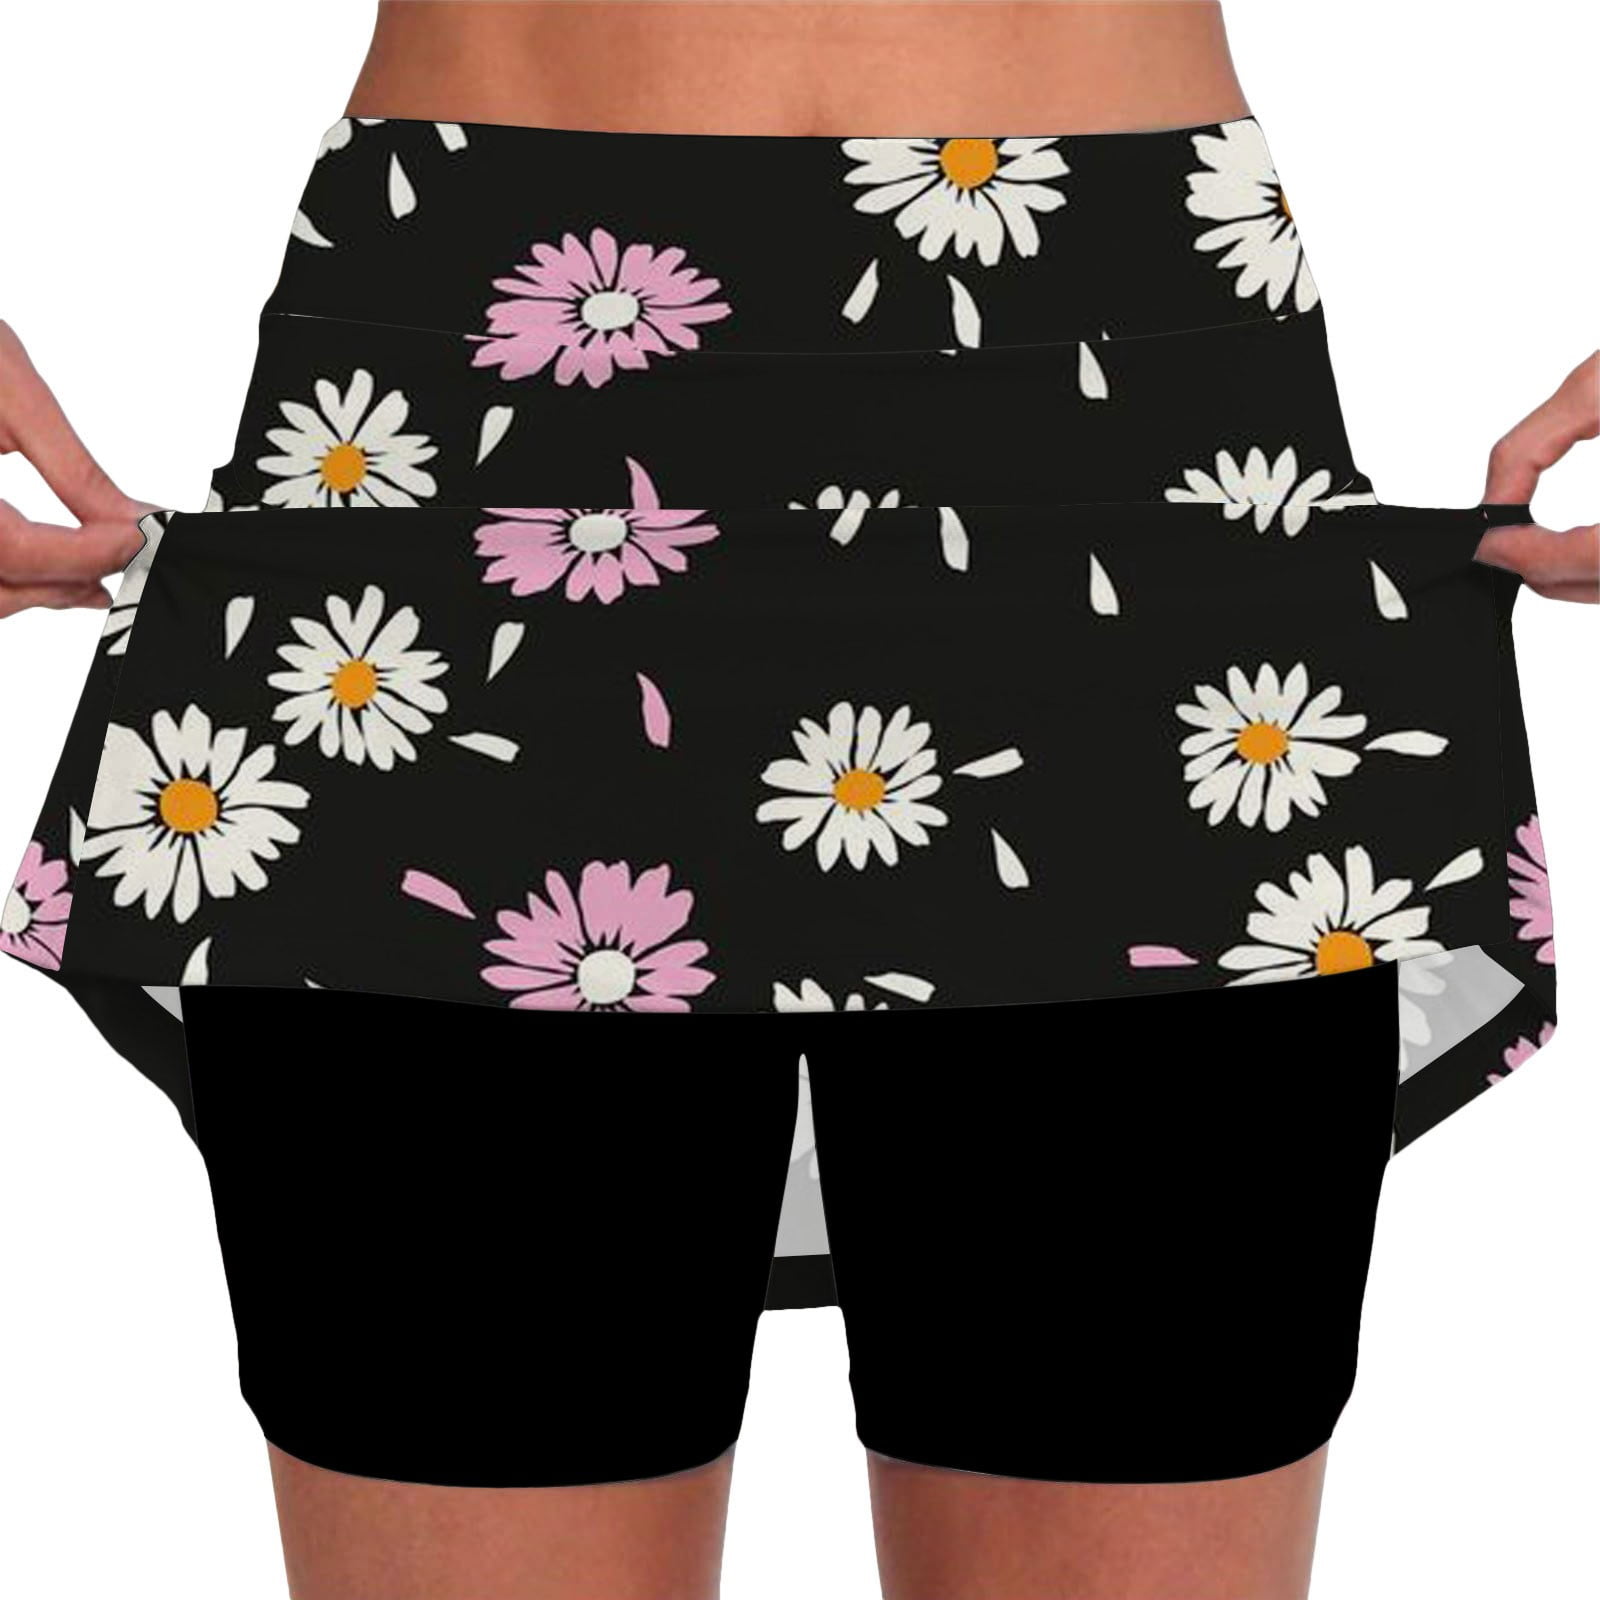 Siaonvr capri pants Women's Elastic Yoga Skirt Color Sports Shorts ...